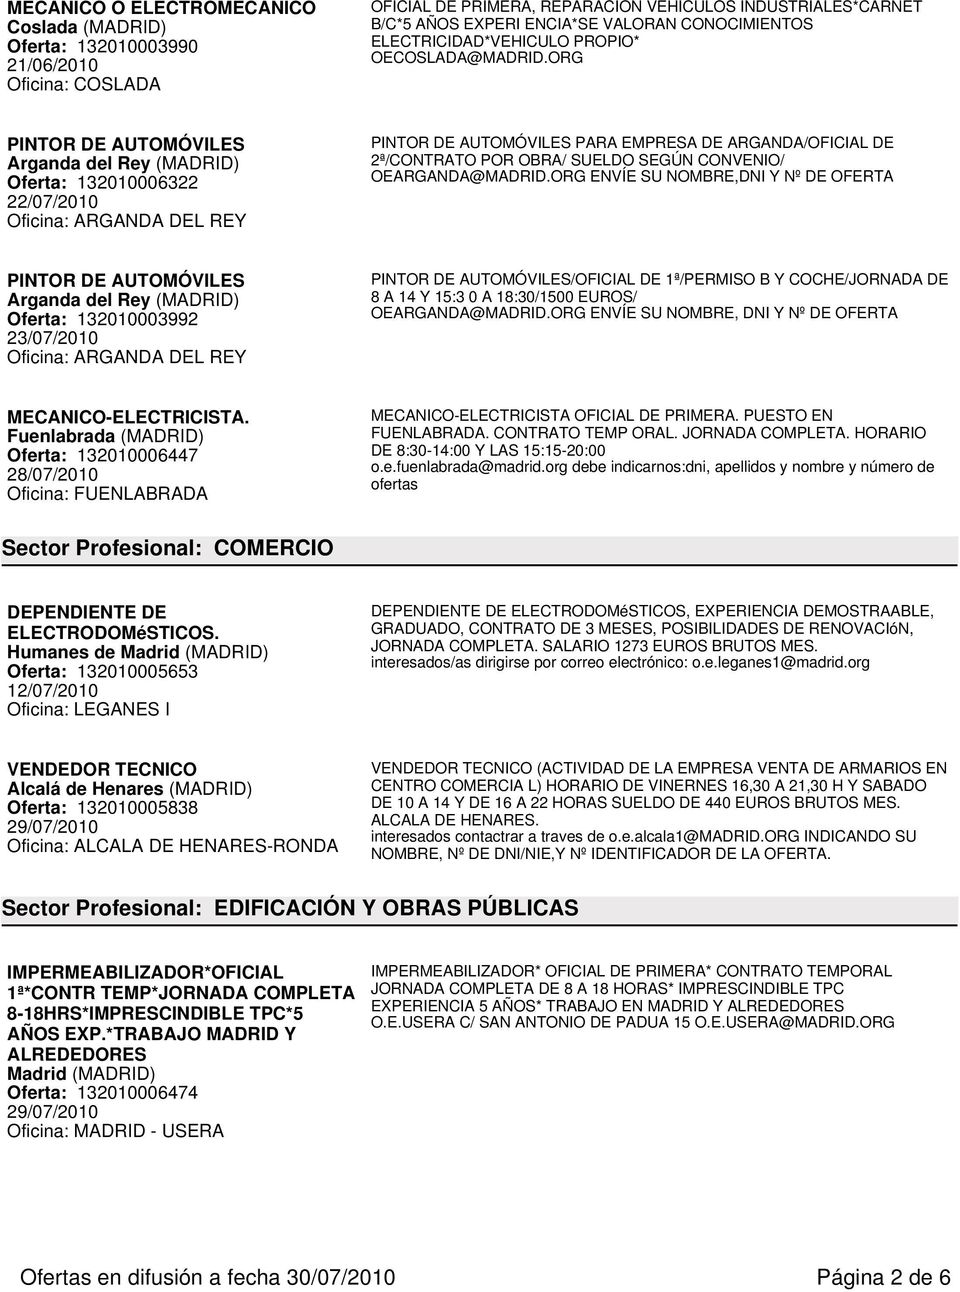 ORG PINTOR DE AUTOMÓVILES Oferta: 132010006322 22/07/2010 PINTOR DE AUTOMÓVILES PARA EMPRESA DE ARGANDA/OFICIAL DE 2ª/CONTRATO POR OBRA/ SUELDO SEGÚN CONVENIO/ OEARGANDA@MADRID.